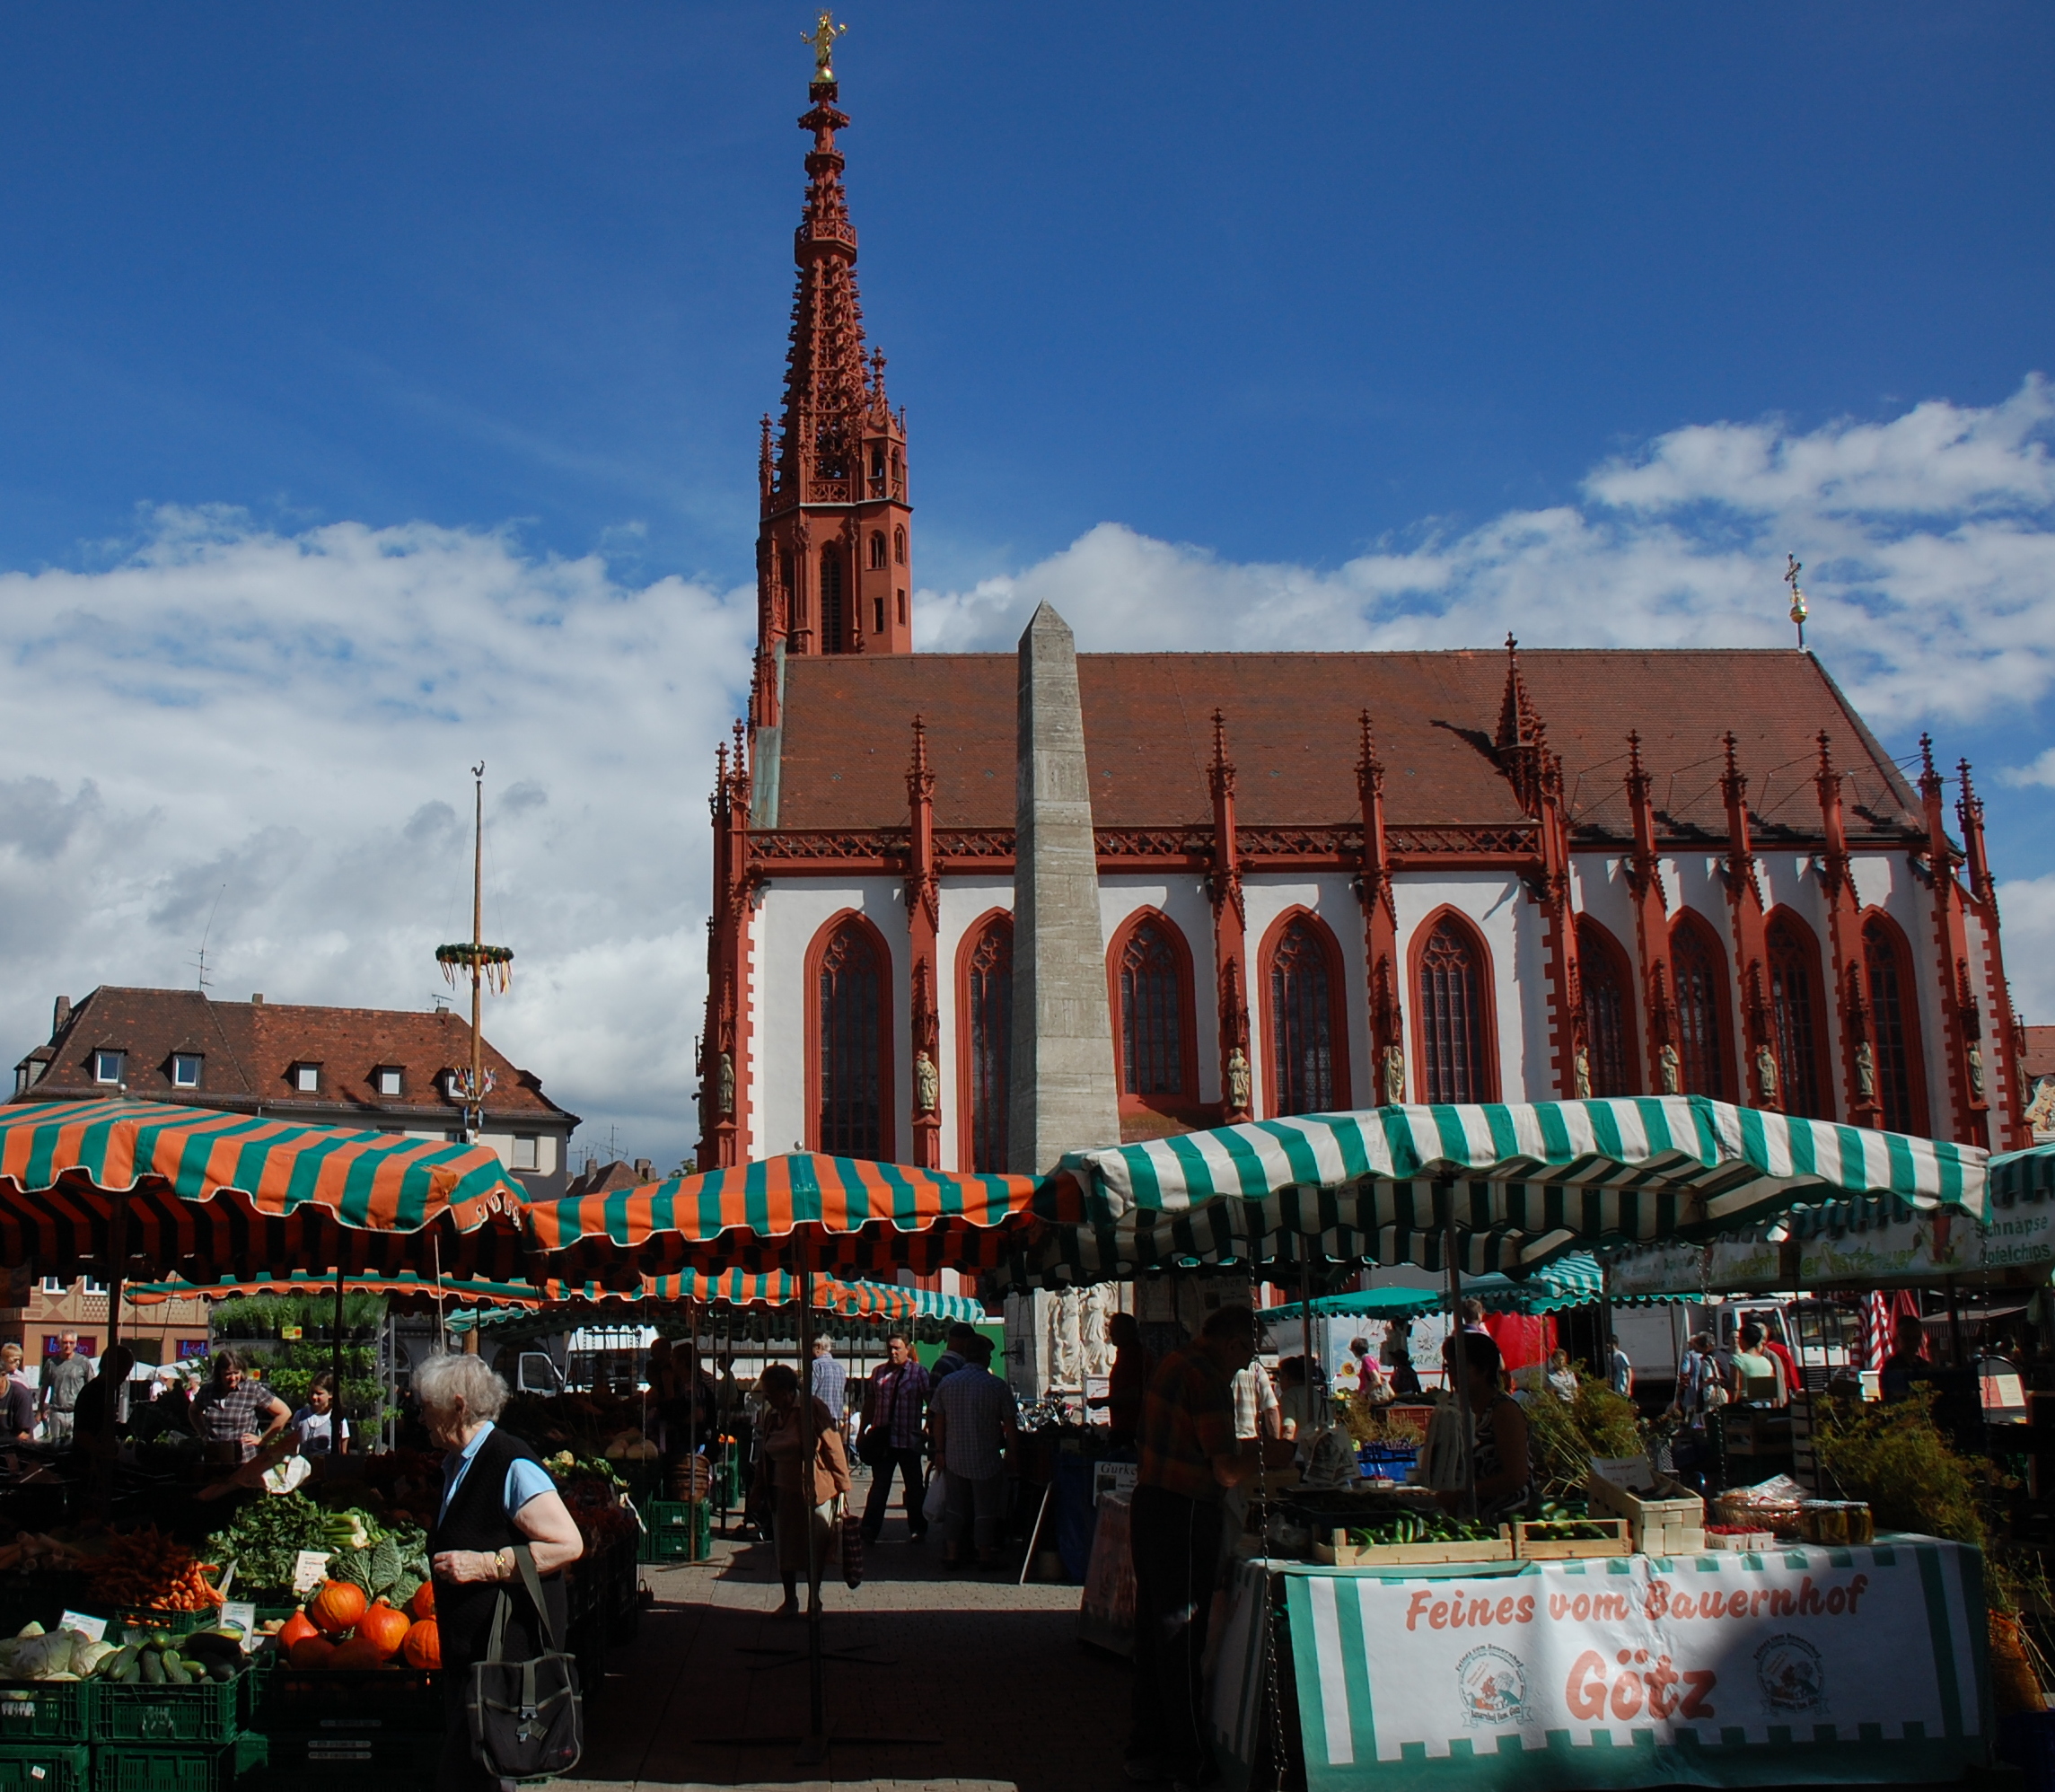 Marktplatz Würzburg